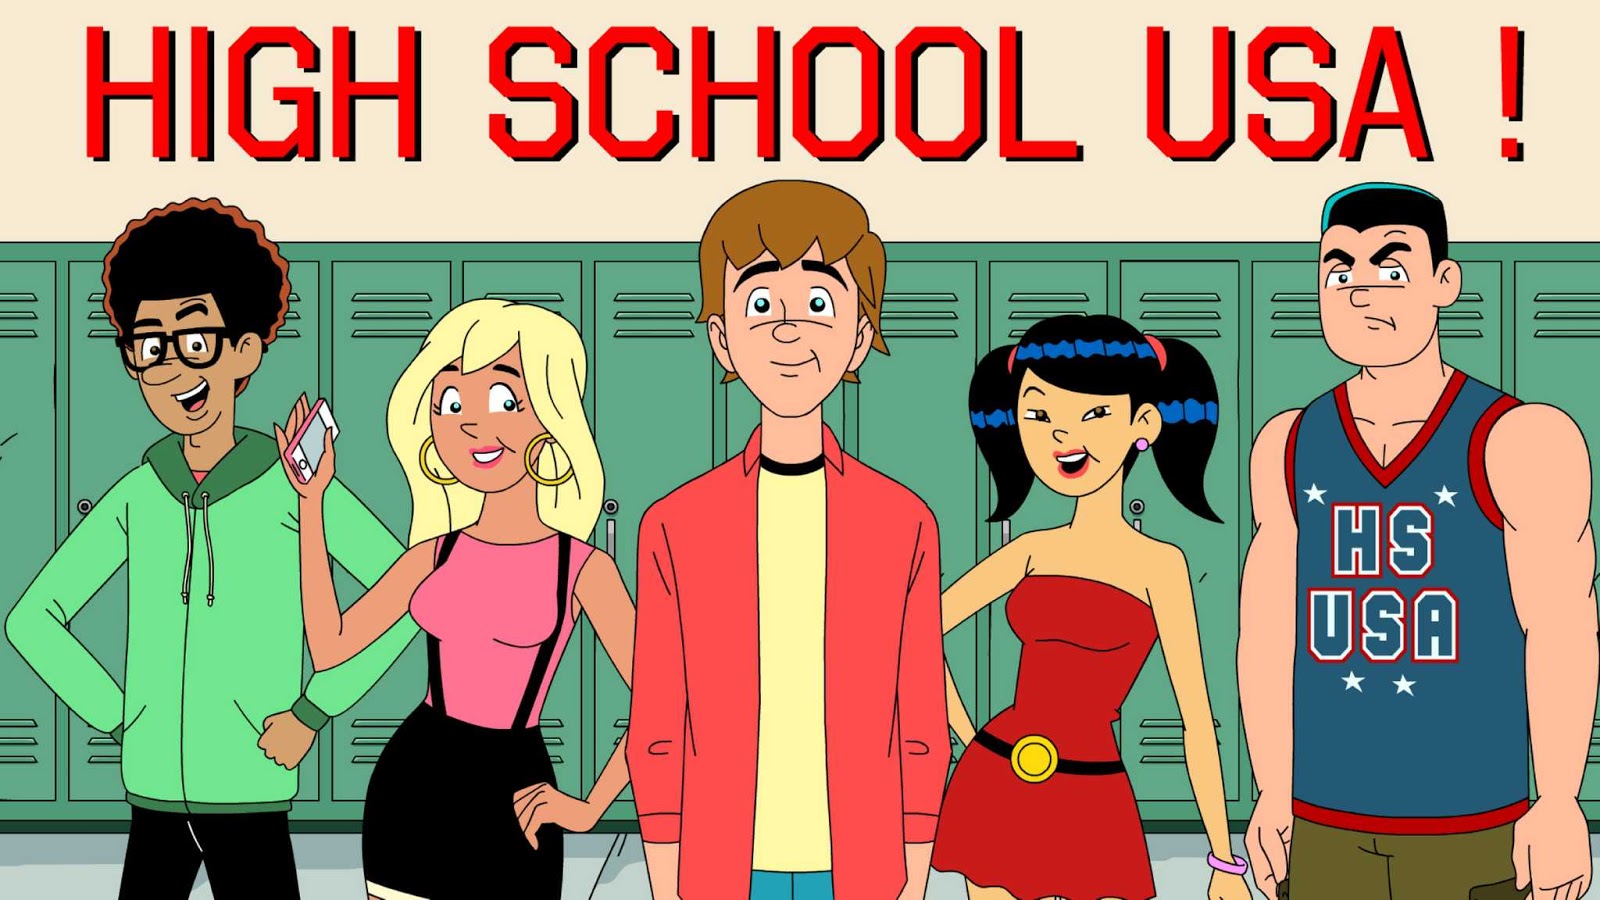 TV Series USA High School USA!